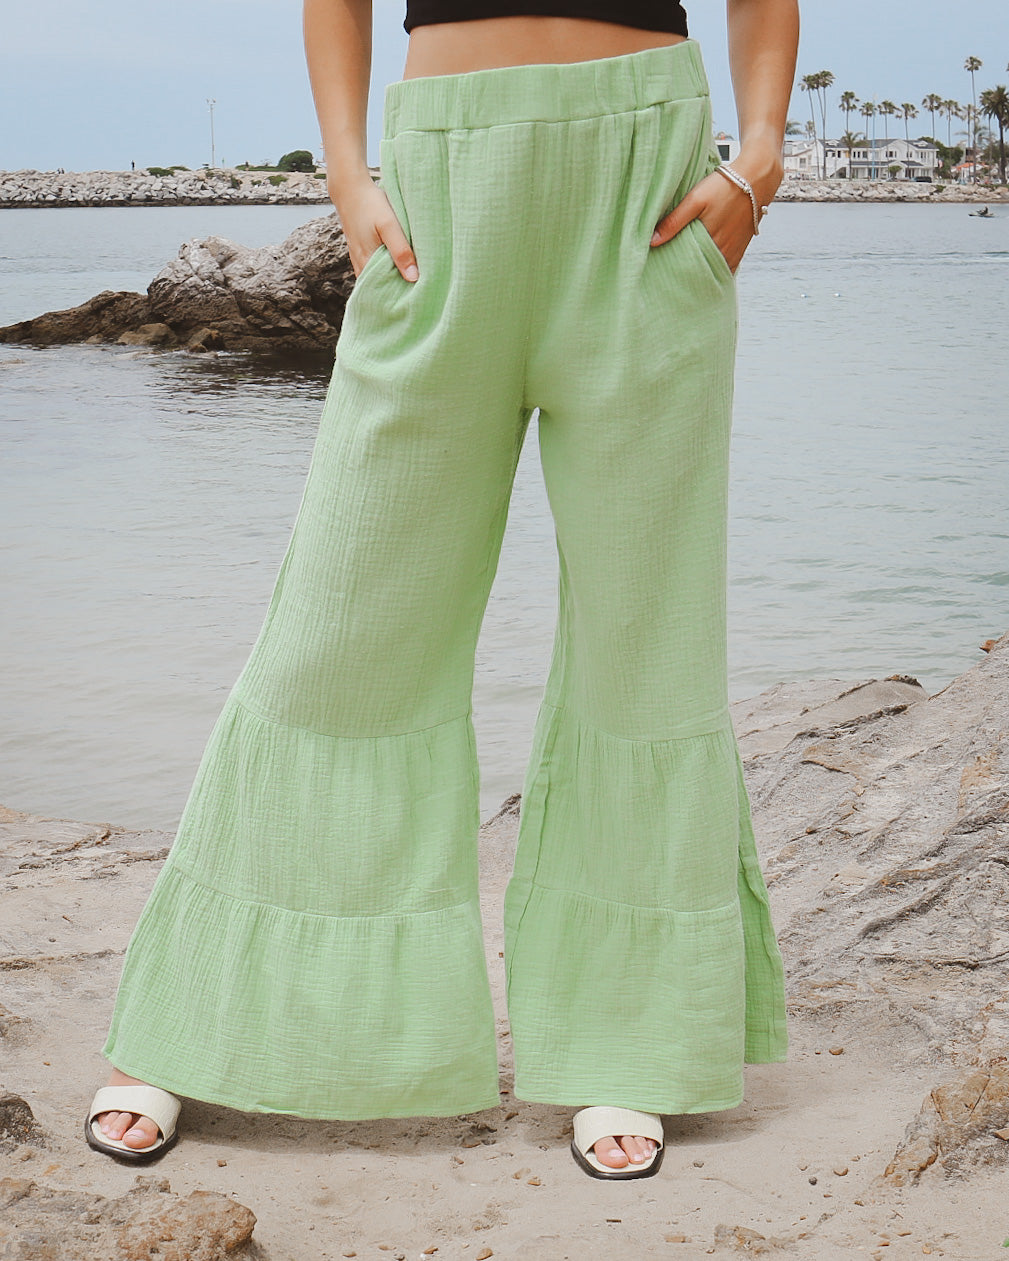 New Waves 2 Wide-Leg Pants - Palm Green – Billabong.com